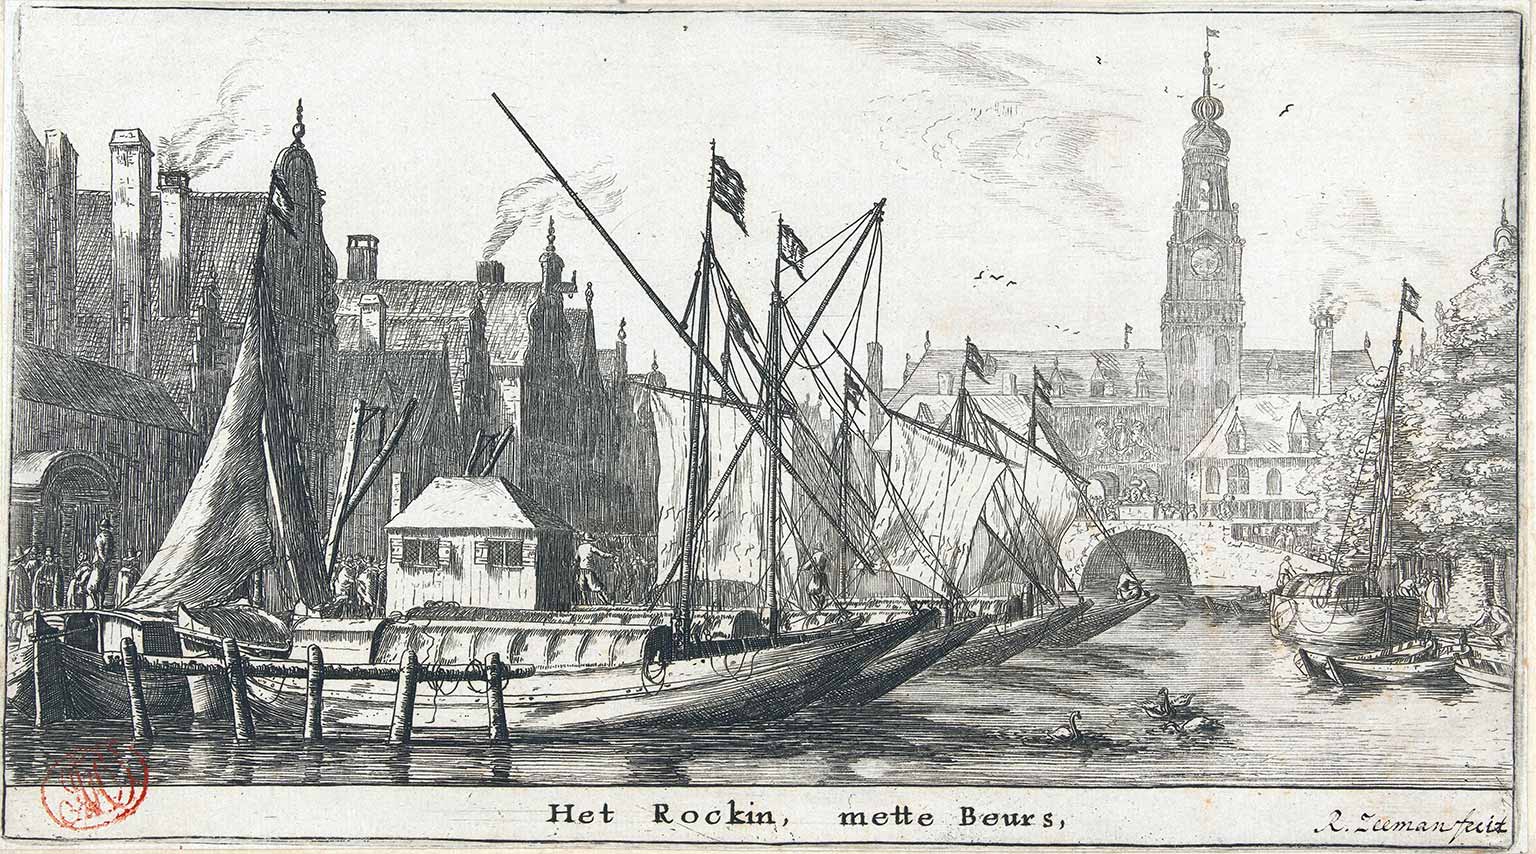 Rokin, Amsterdam, around 1654 with the first Amsterdam Exchange, designed by Hendrick de Keyser